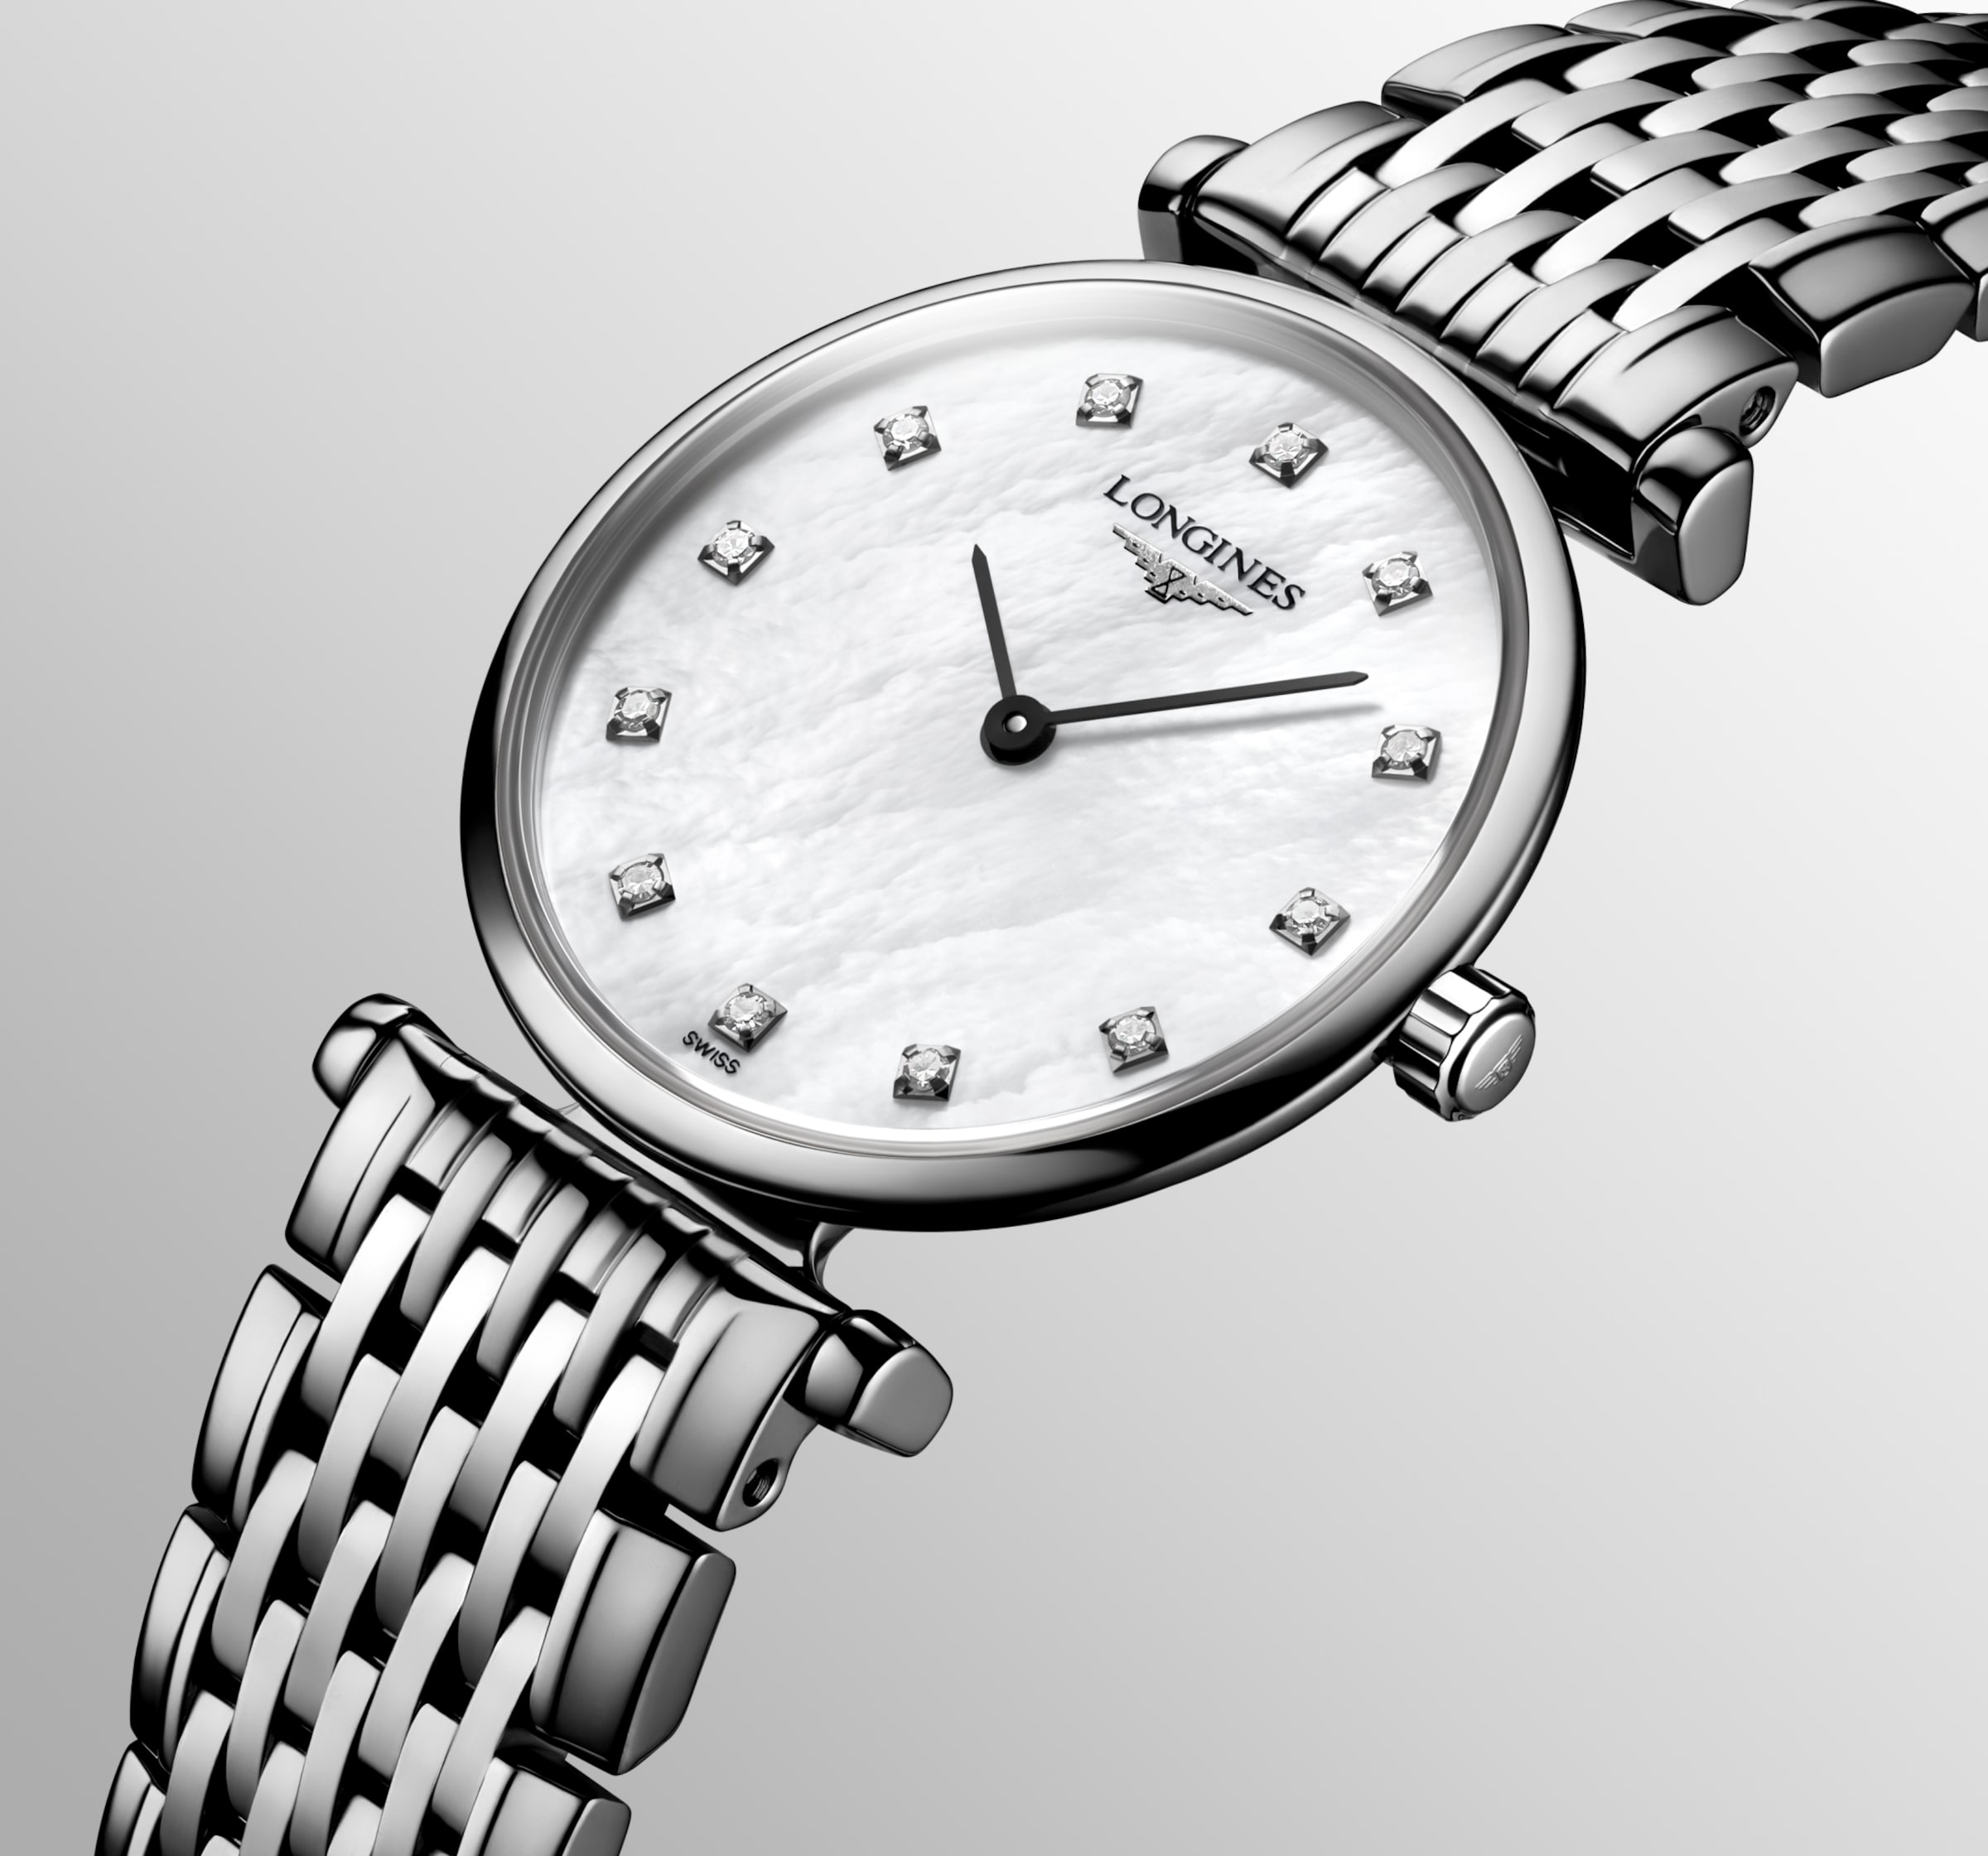 Longines LA GRANDE CLASSIQUE DE LONGINES Quartz Stainless steel Watch - L4.209.4.87.6